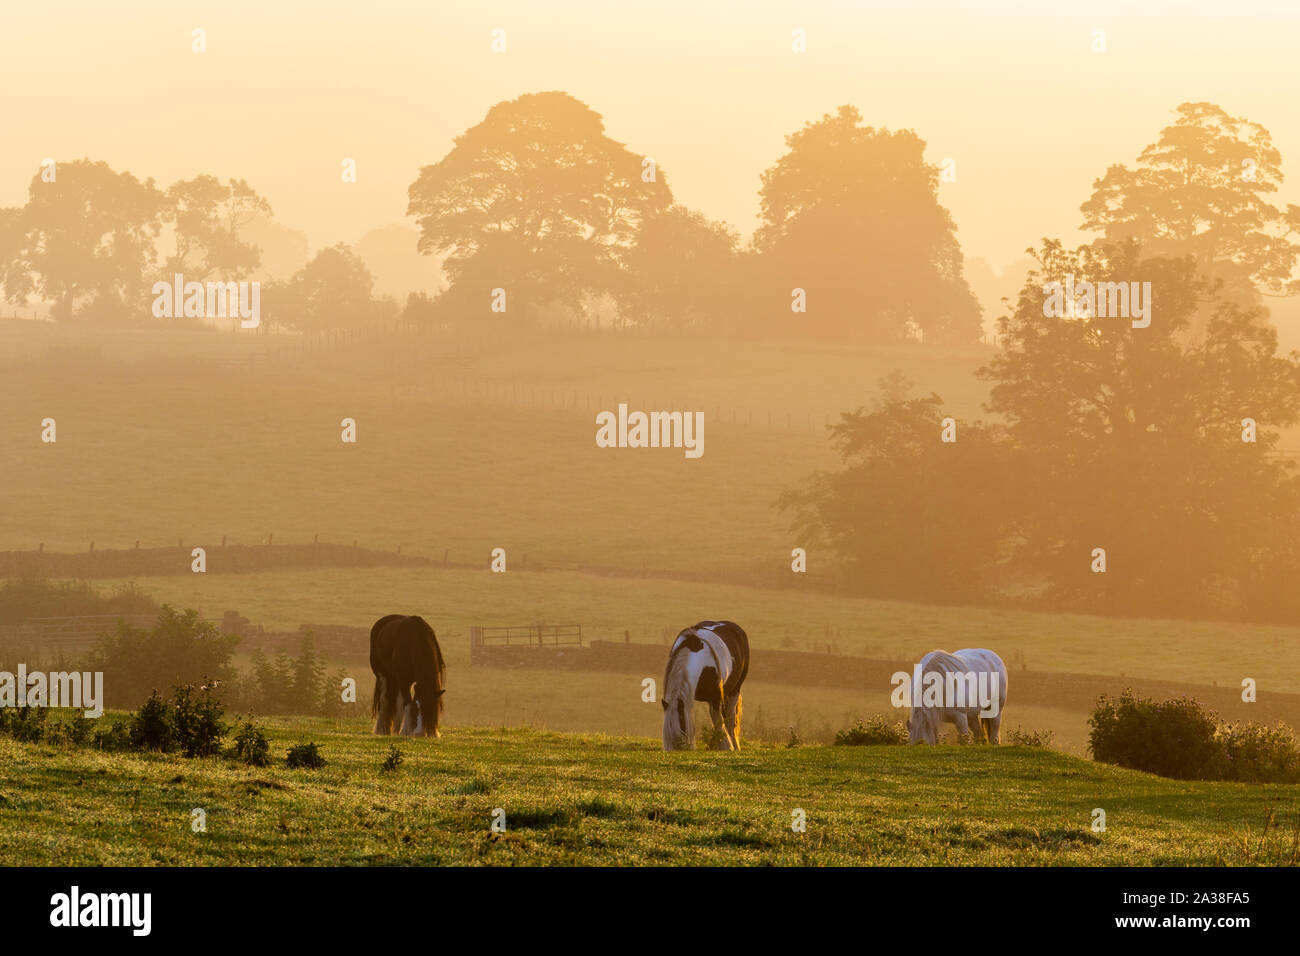 Trois chevaux avec la tête basse de manger l'herbe sur Carlton Lane, Yeadon, comme le soleil illumine le paysage brumeux avec une lueur dorée. Banque D'Images